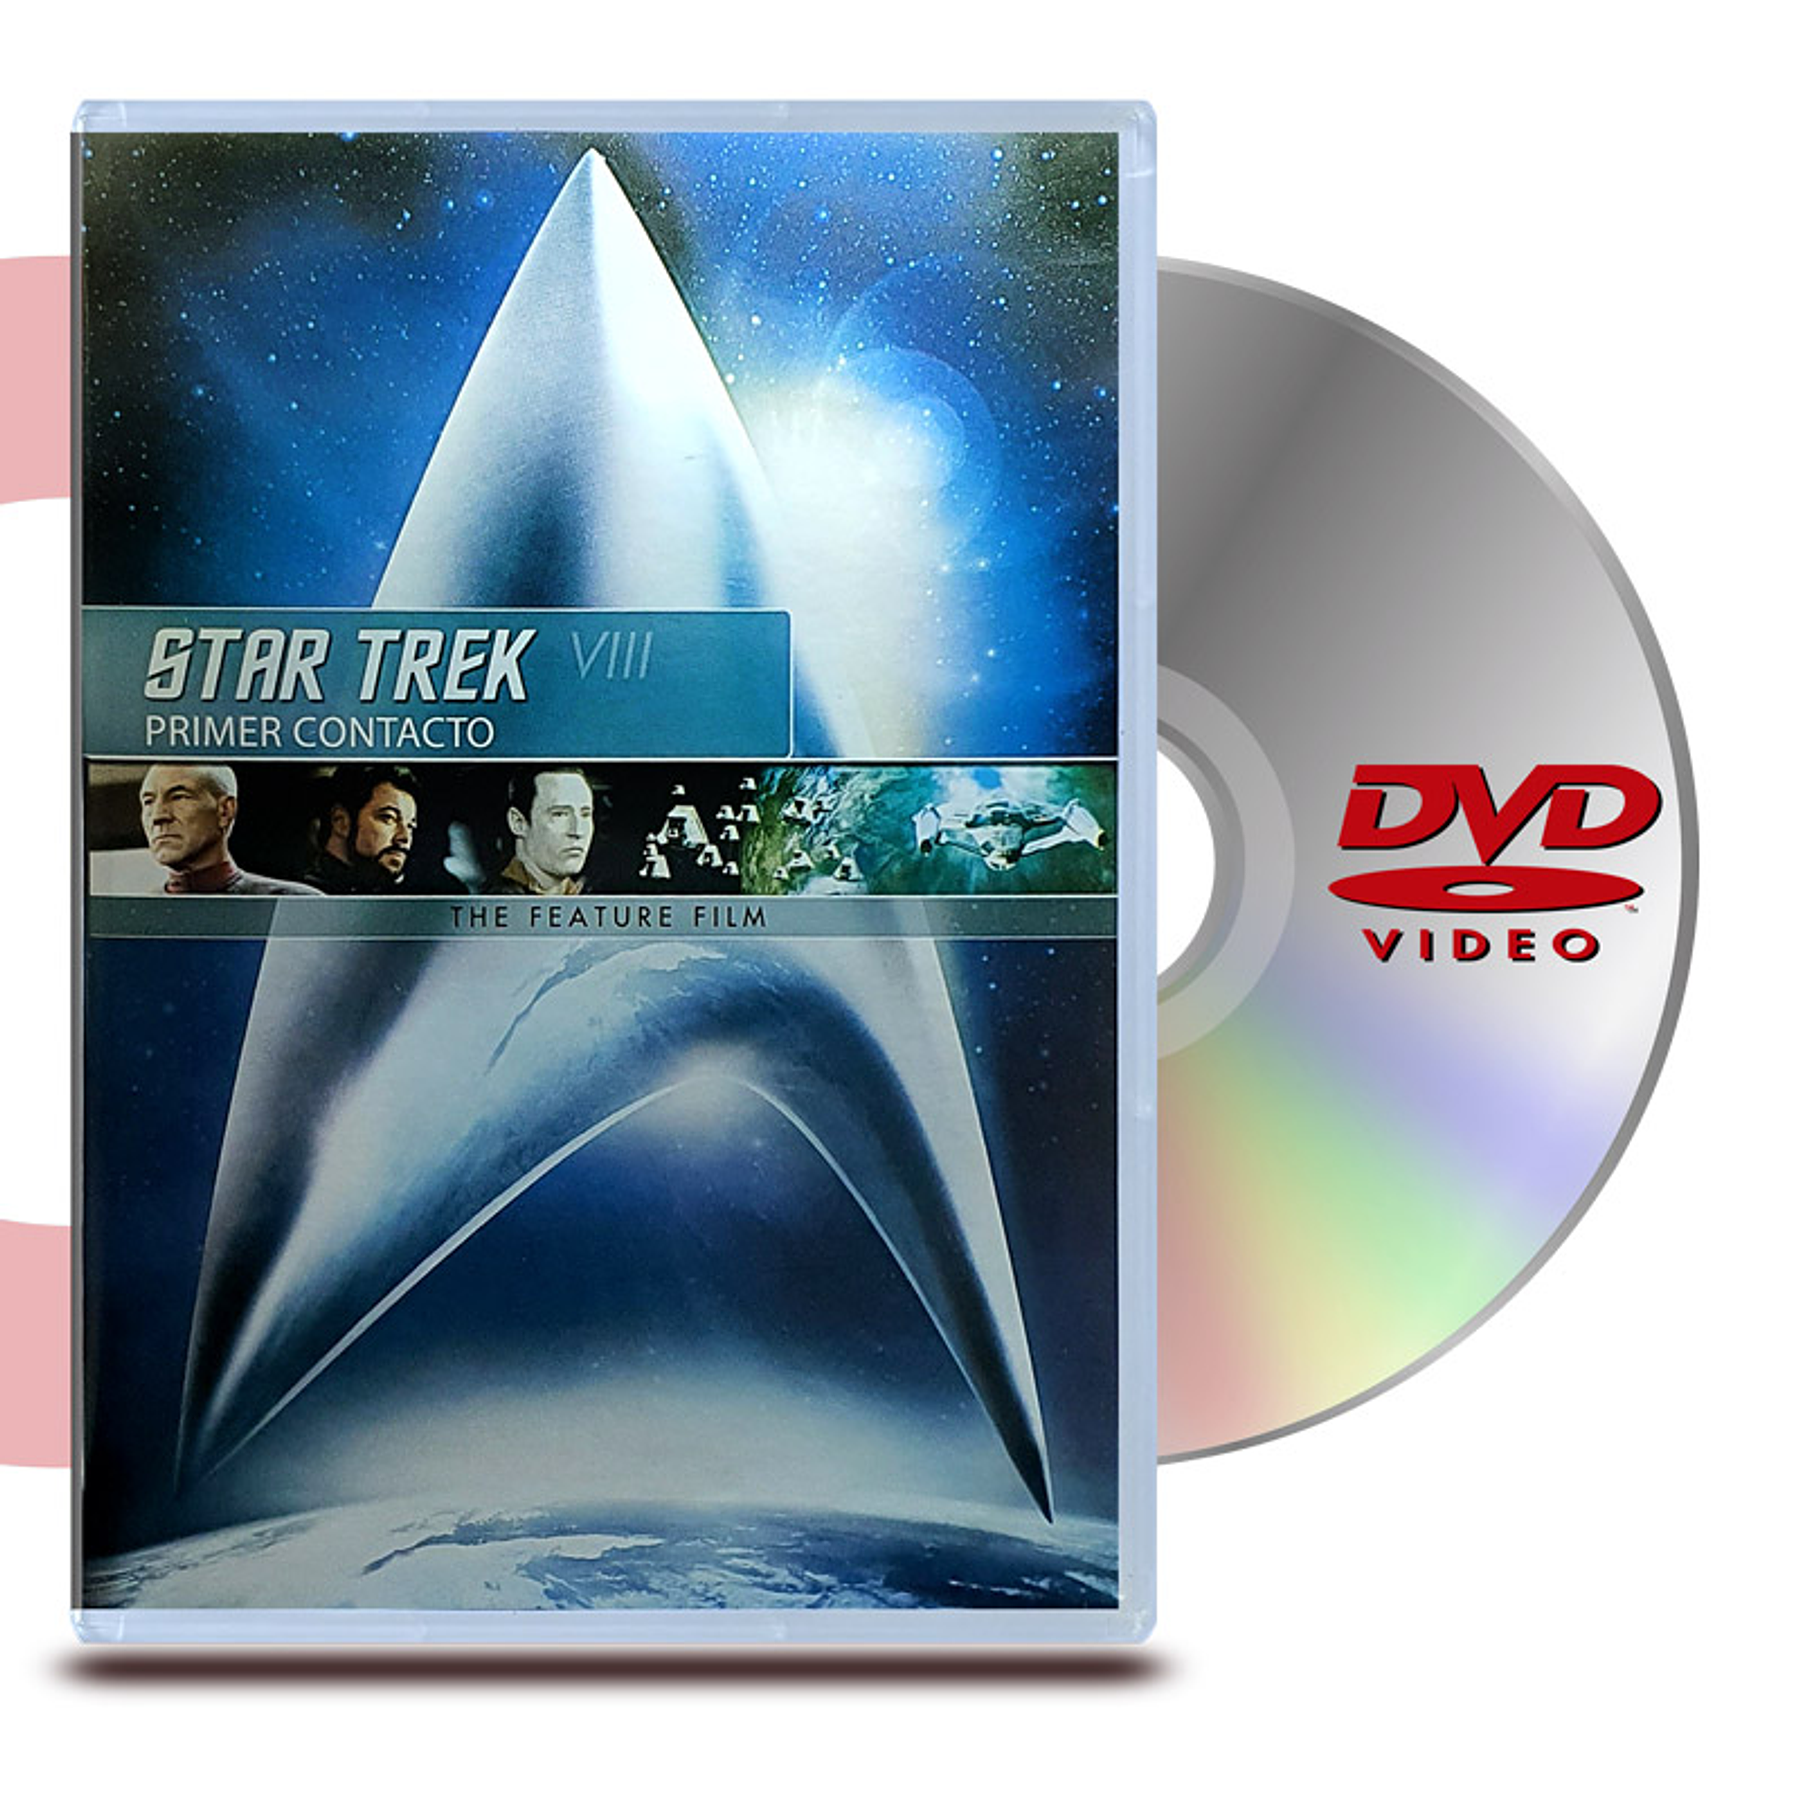 DVD STAR TREK 8 PRIMER CONTACTO - VIAJE A LAS ESTRELLAS 8